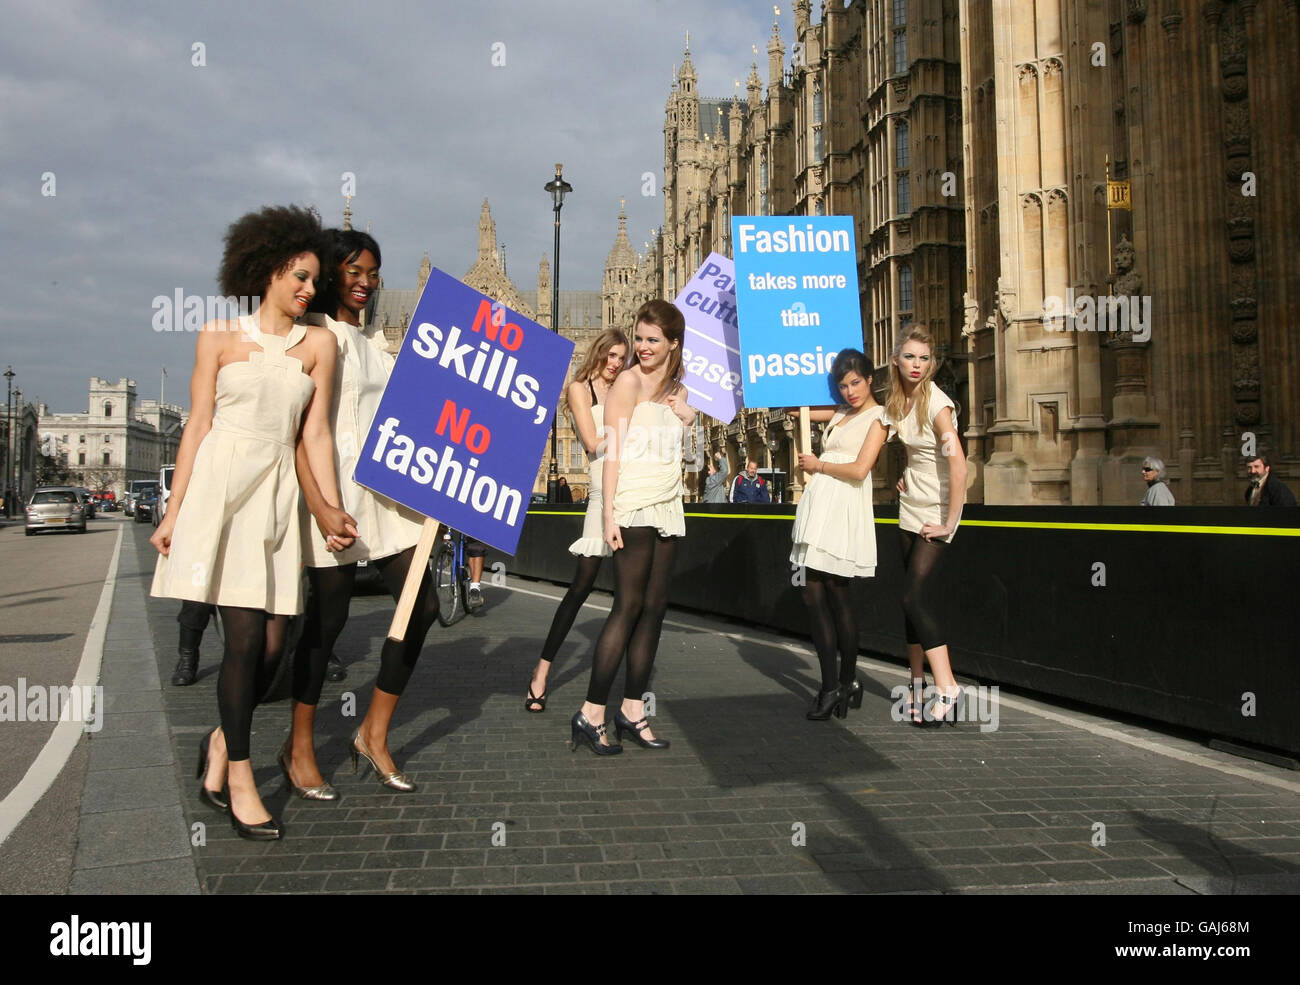 Para marcar el lanzamiento de la campaña "no Skills, no Fashion", los modelos llevan artículos de aseo (el primer "set-up" técnico de un diseñador de moda de una prenda) y posan fuera de las Casas del Parlamento en el centro de Londres. Foto de stock